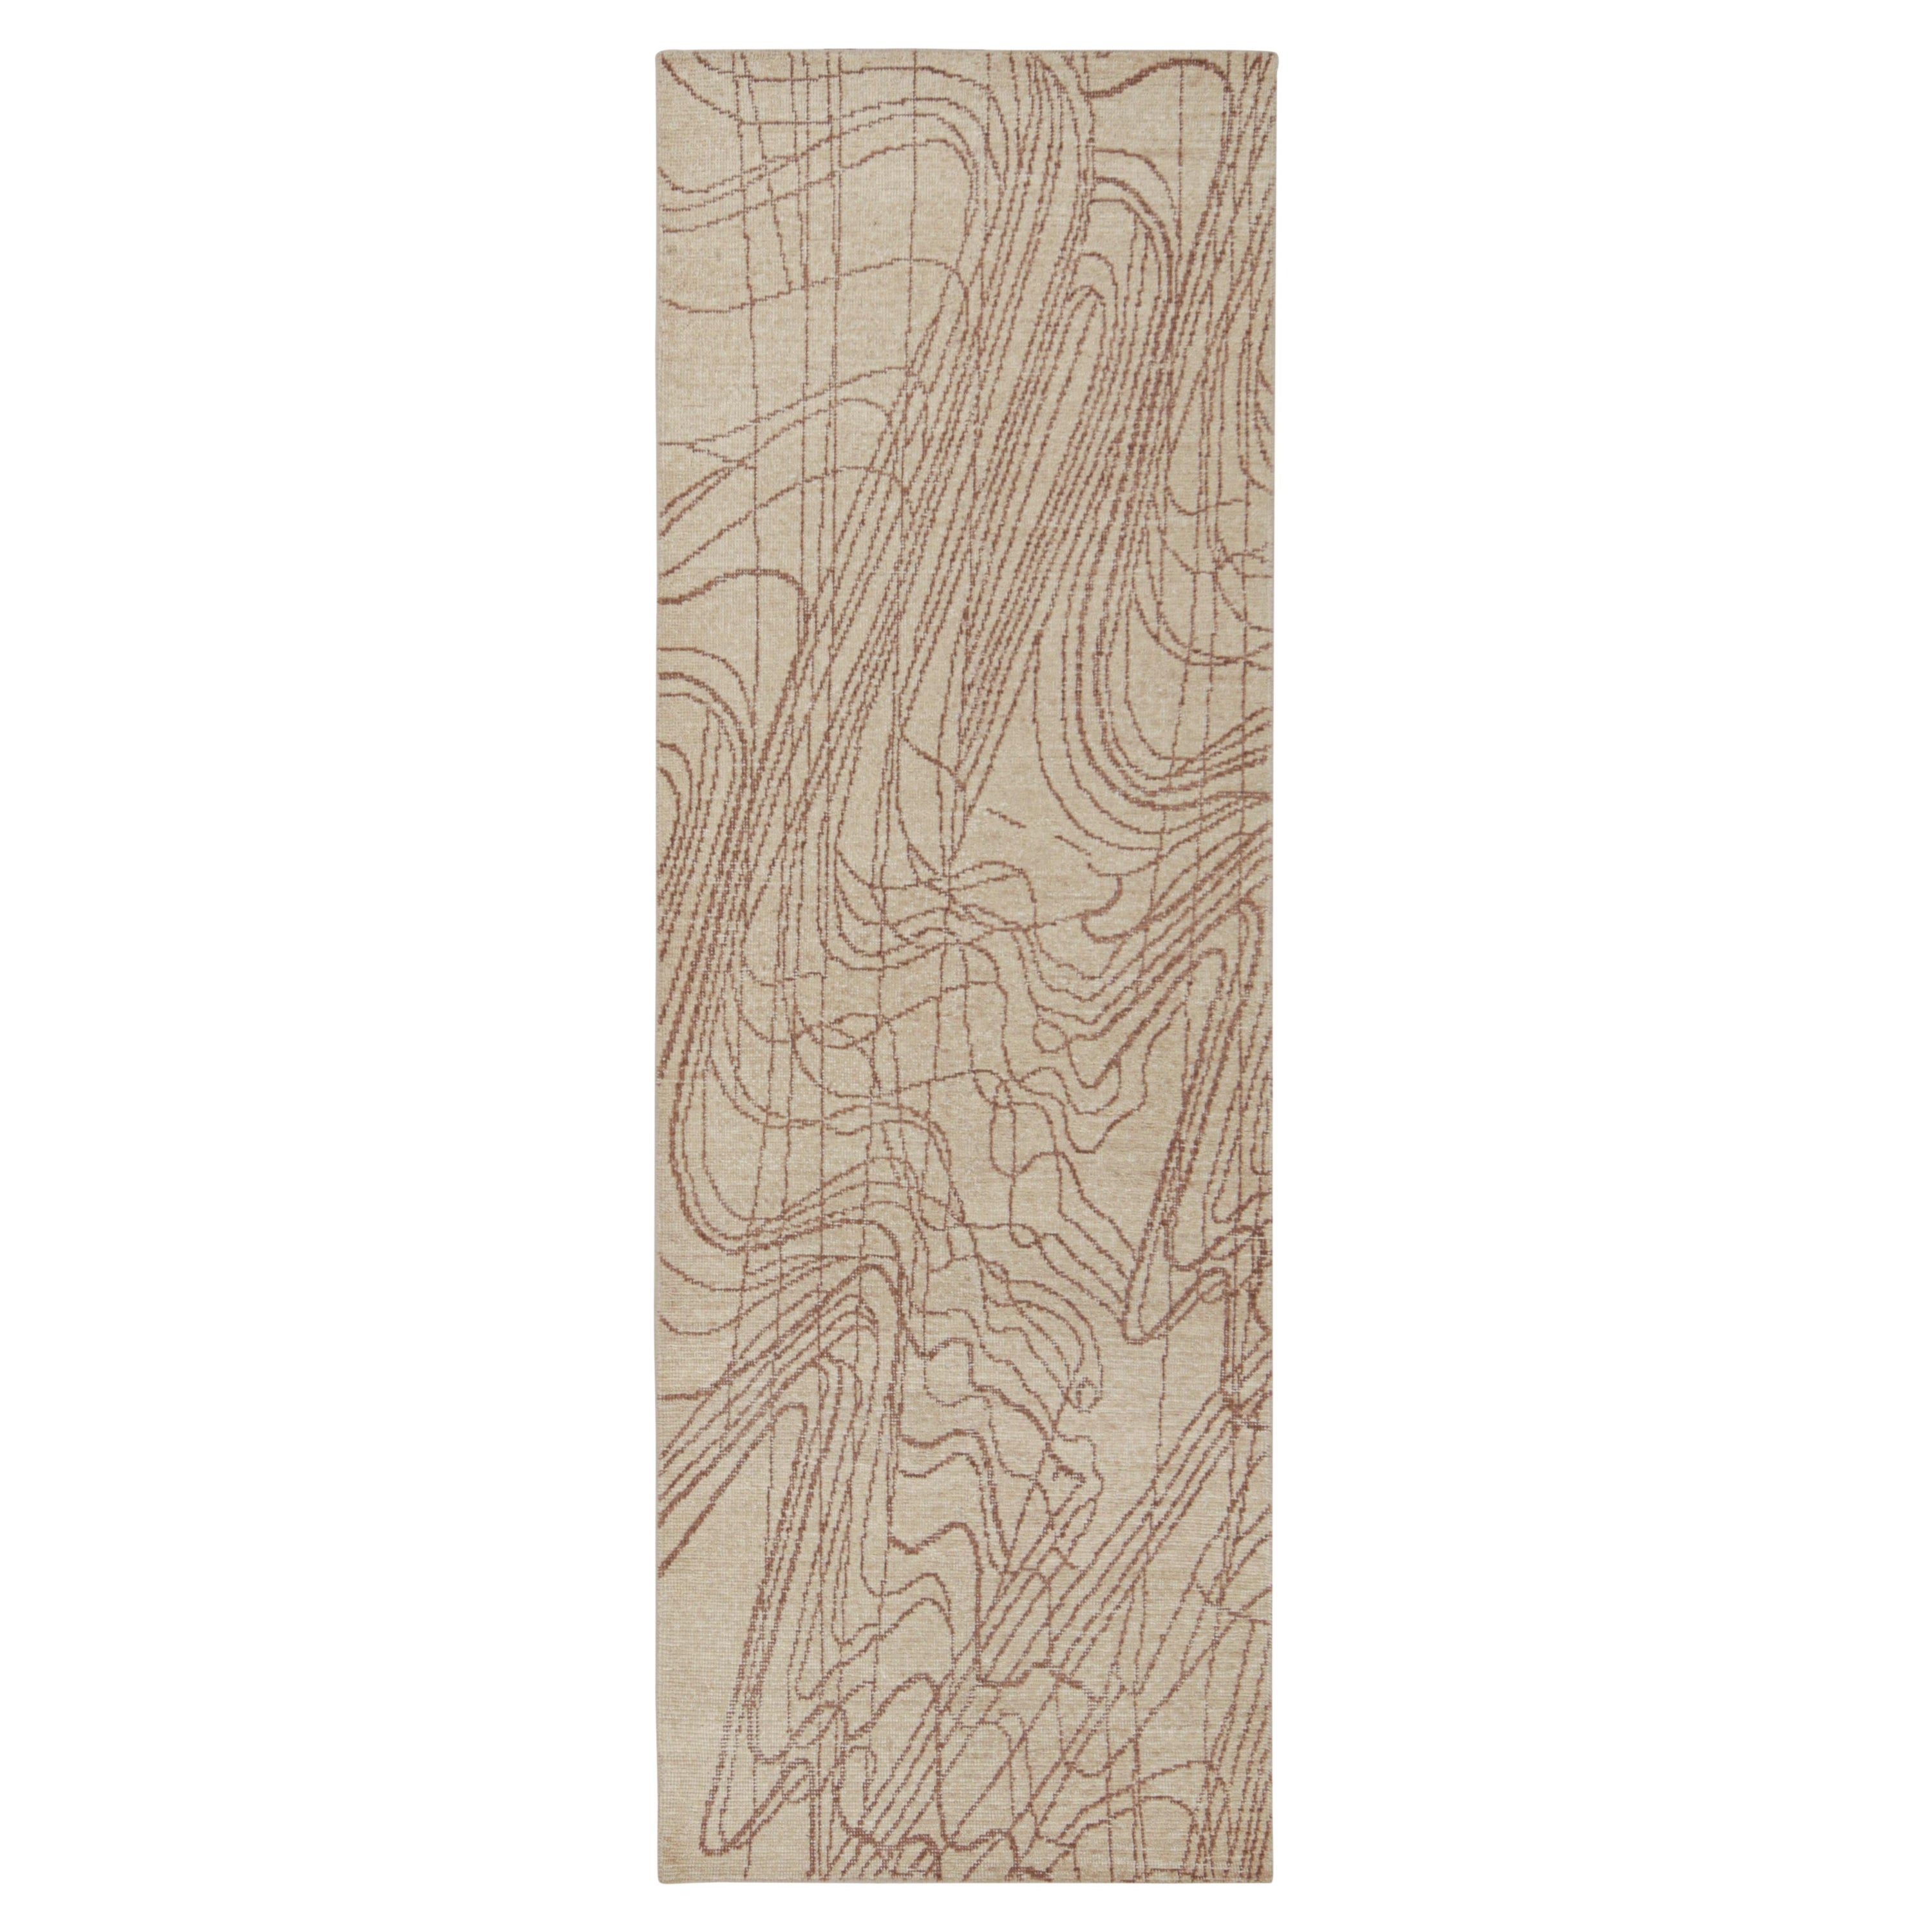 Abstrakter Läufer von Rug & Kilim im Distressed-Stil in Beige-Braun mit geometrischem Muster